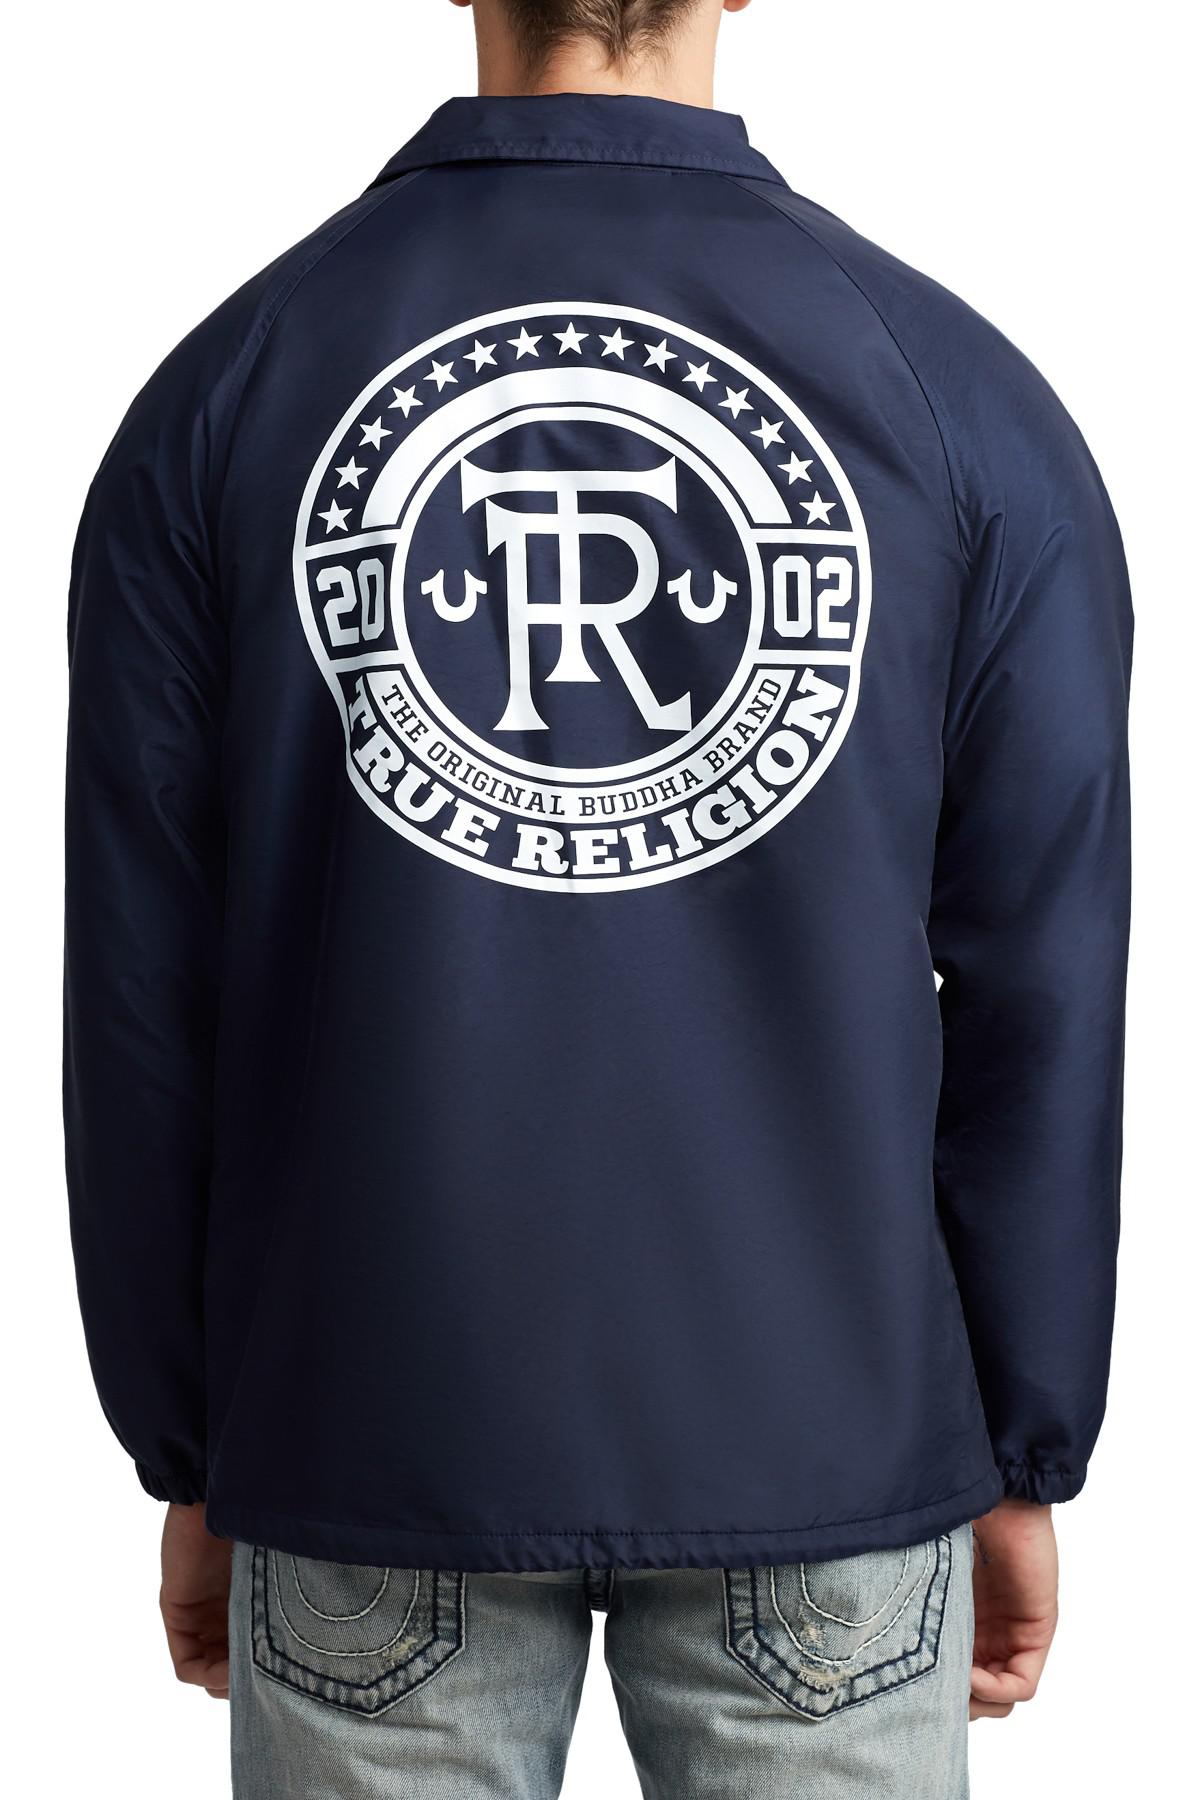 navy blue true religion jacket